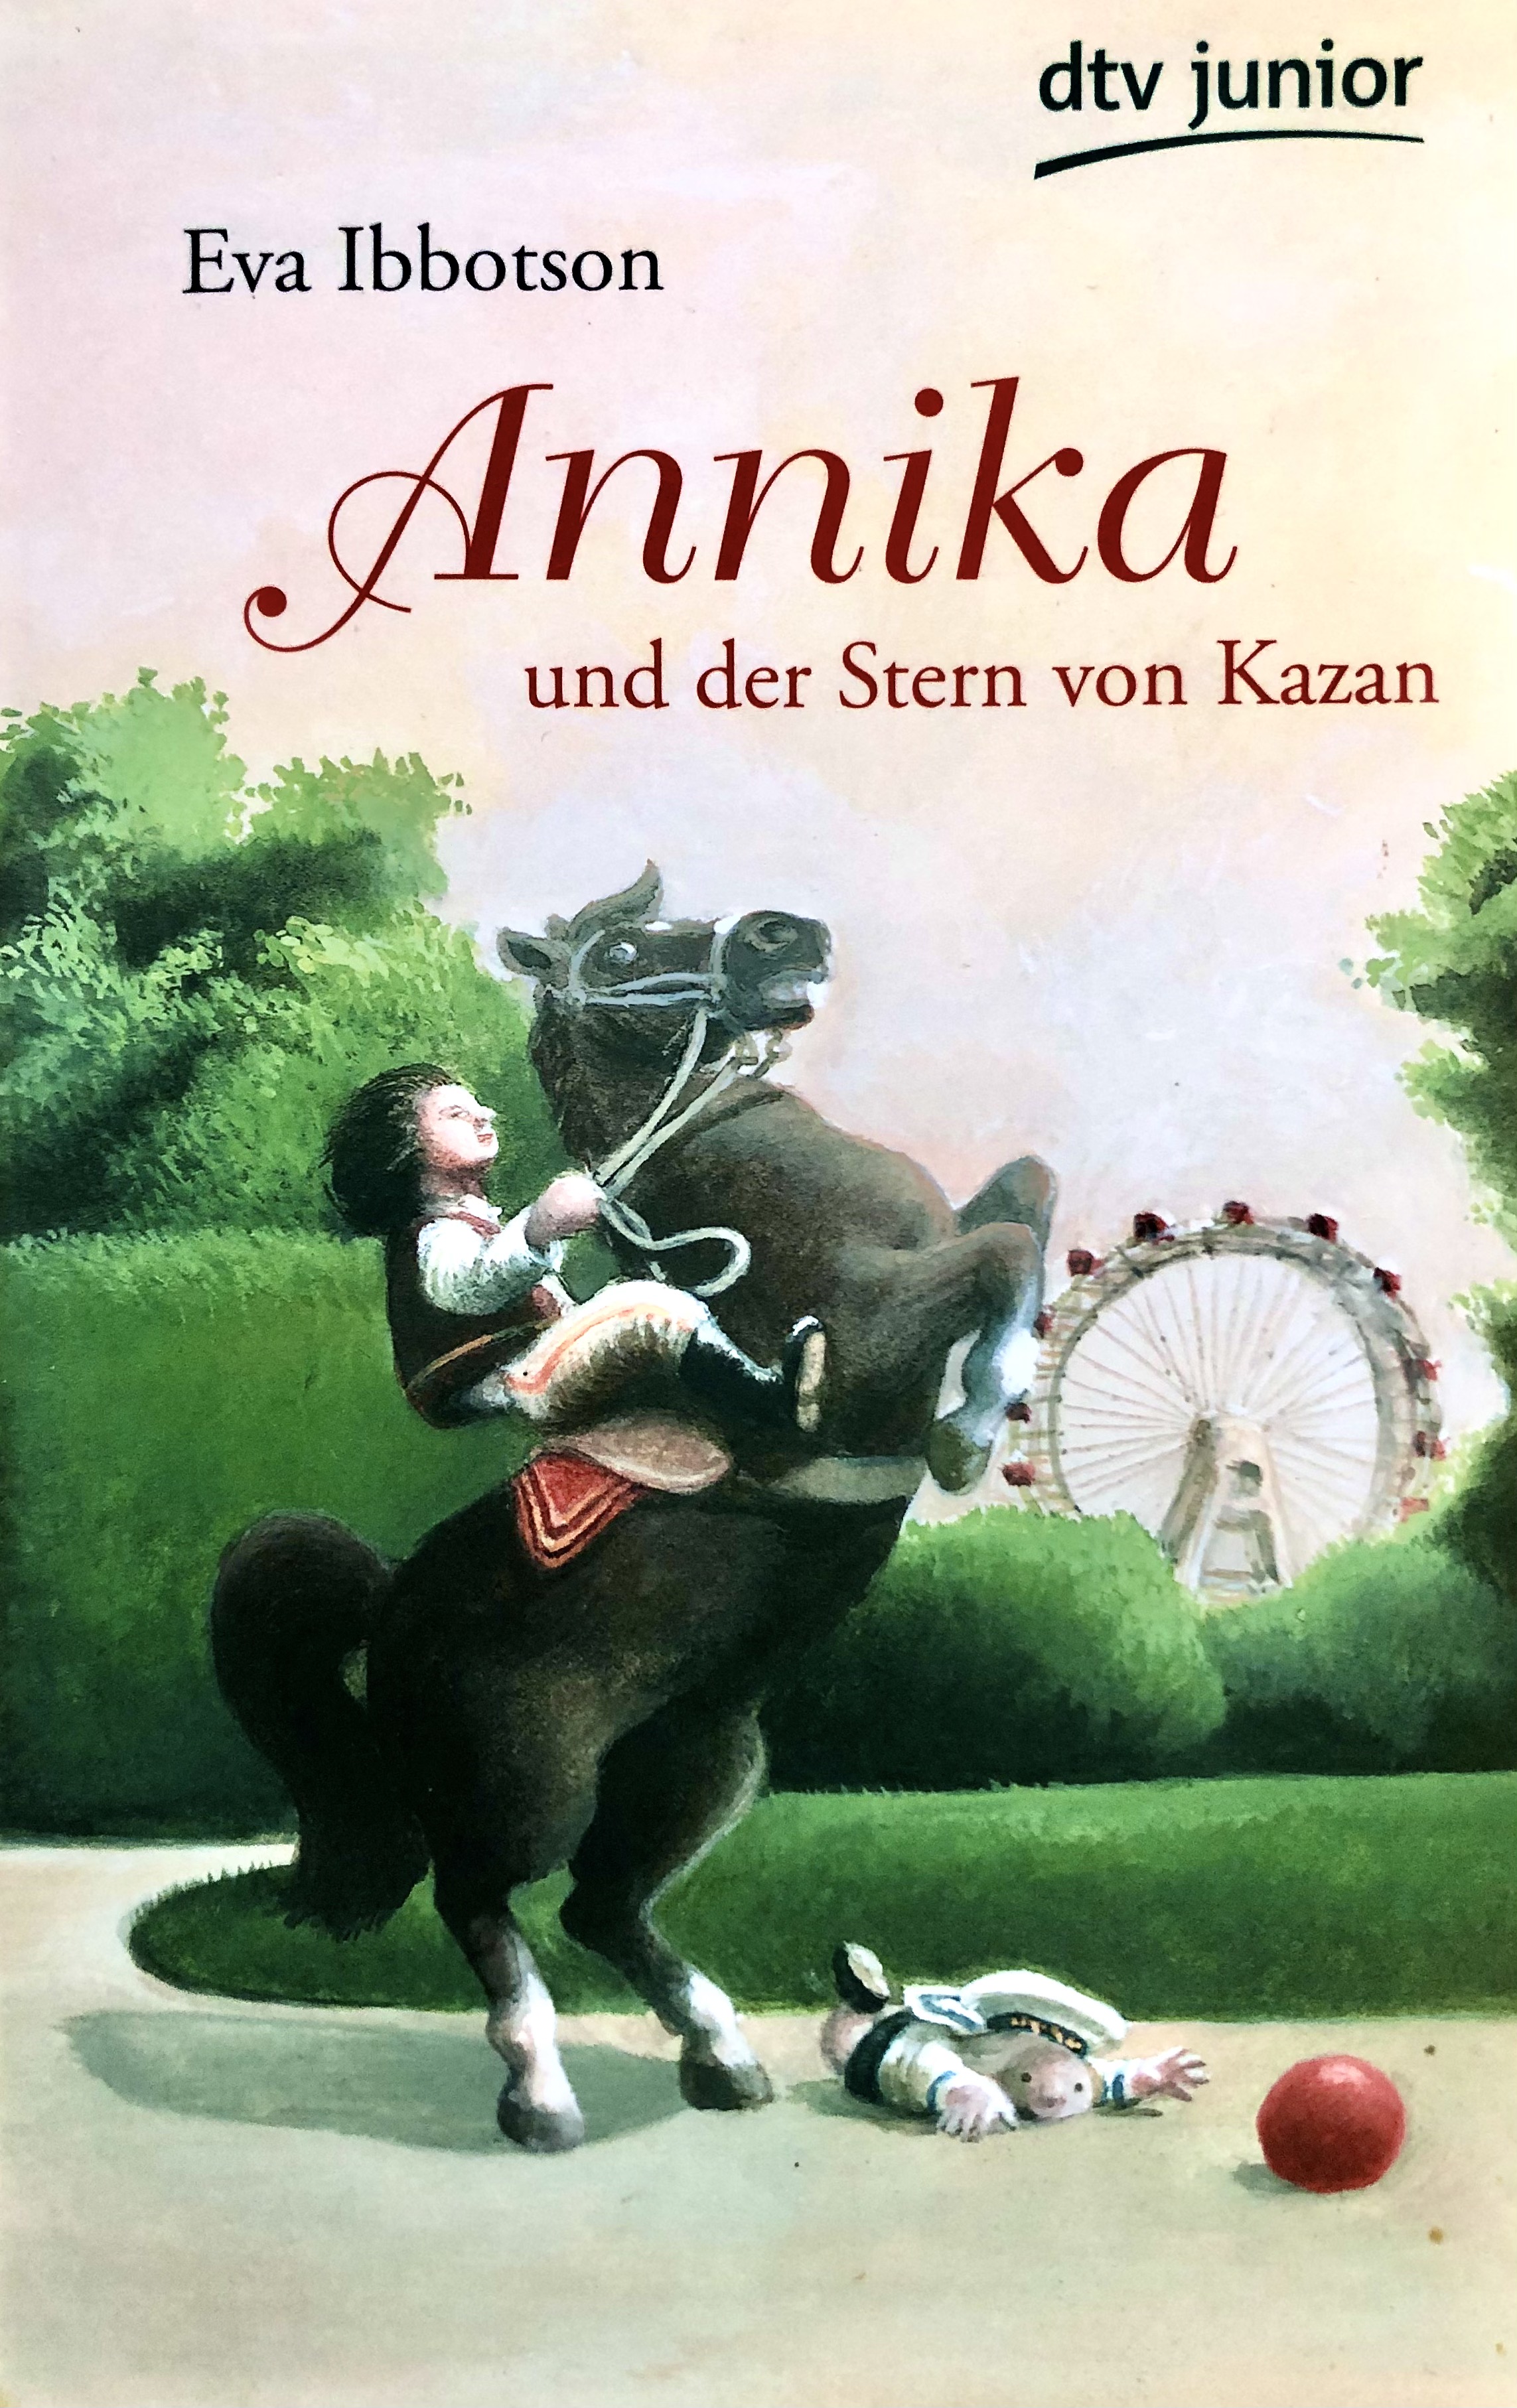 Das Findelkind Annika wächst im Wien der Kaiserzeit auf, bis plötzlich seine richtige Mutter auftaucht ...